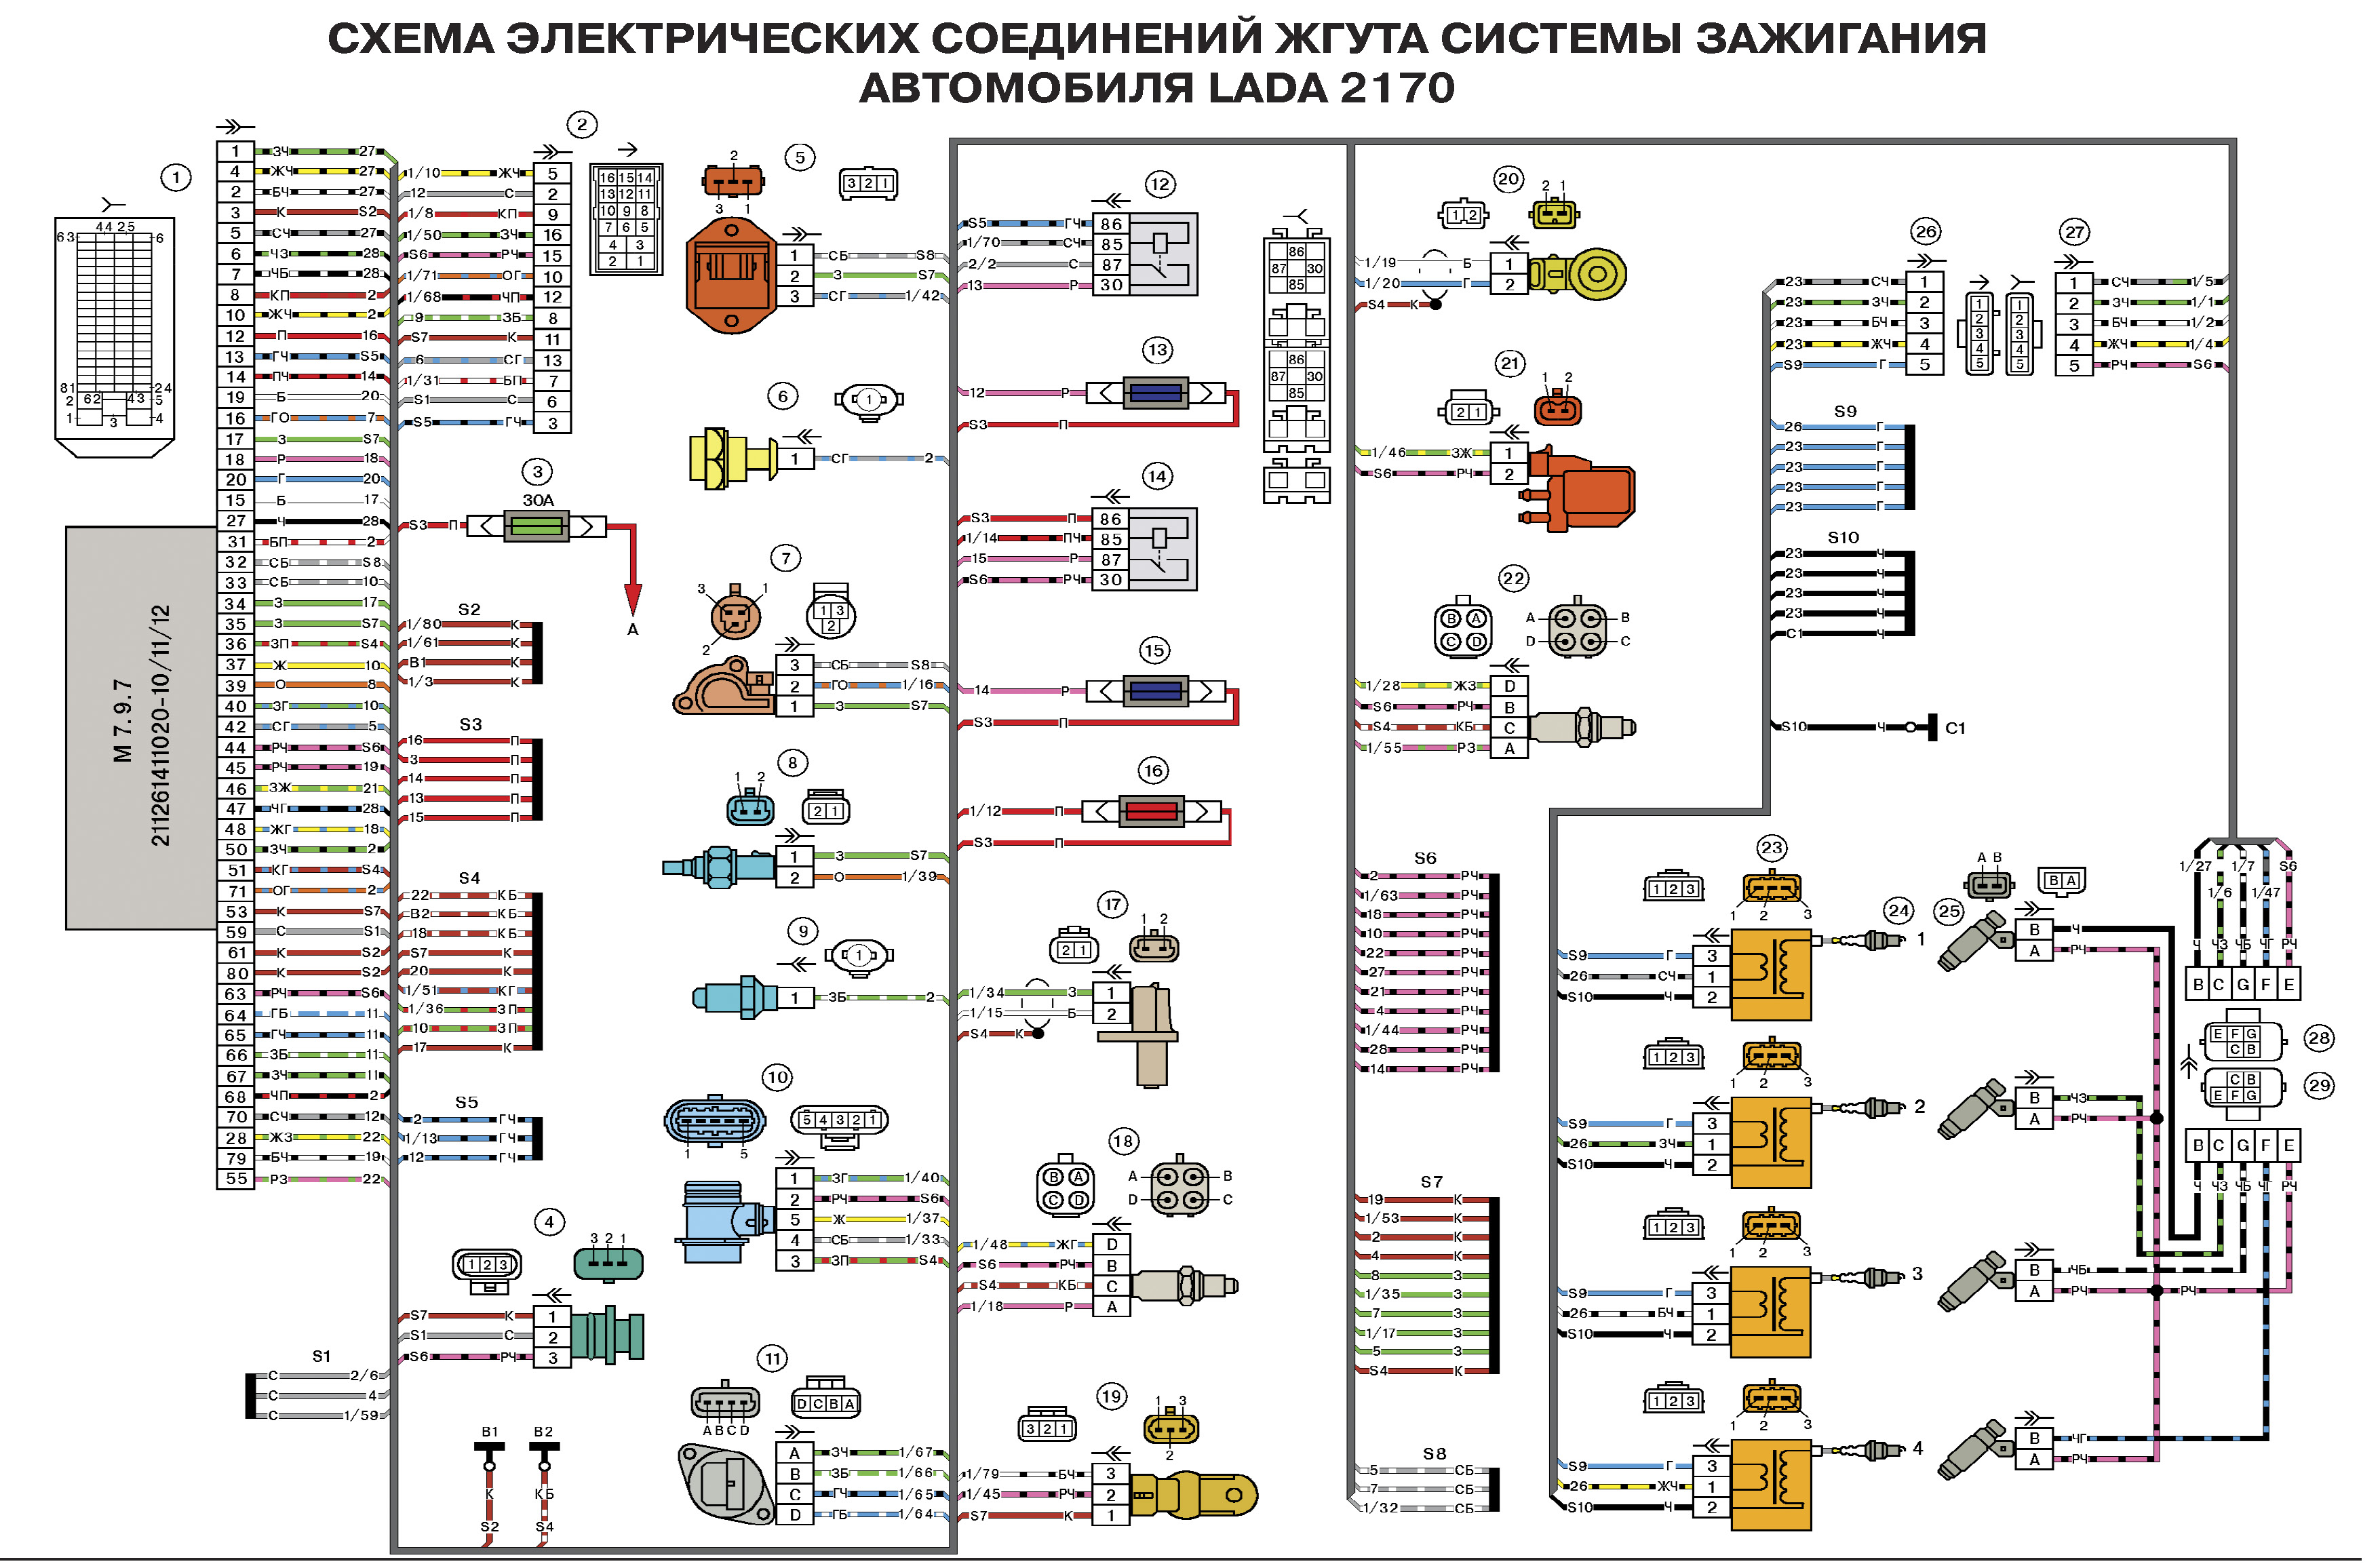 Схема электрических соединений жгута системы зажигания автомобиля LADA 2170